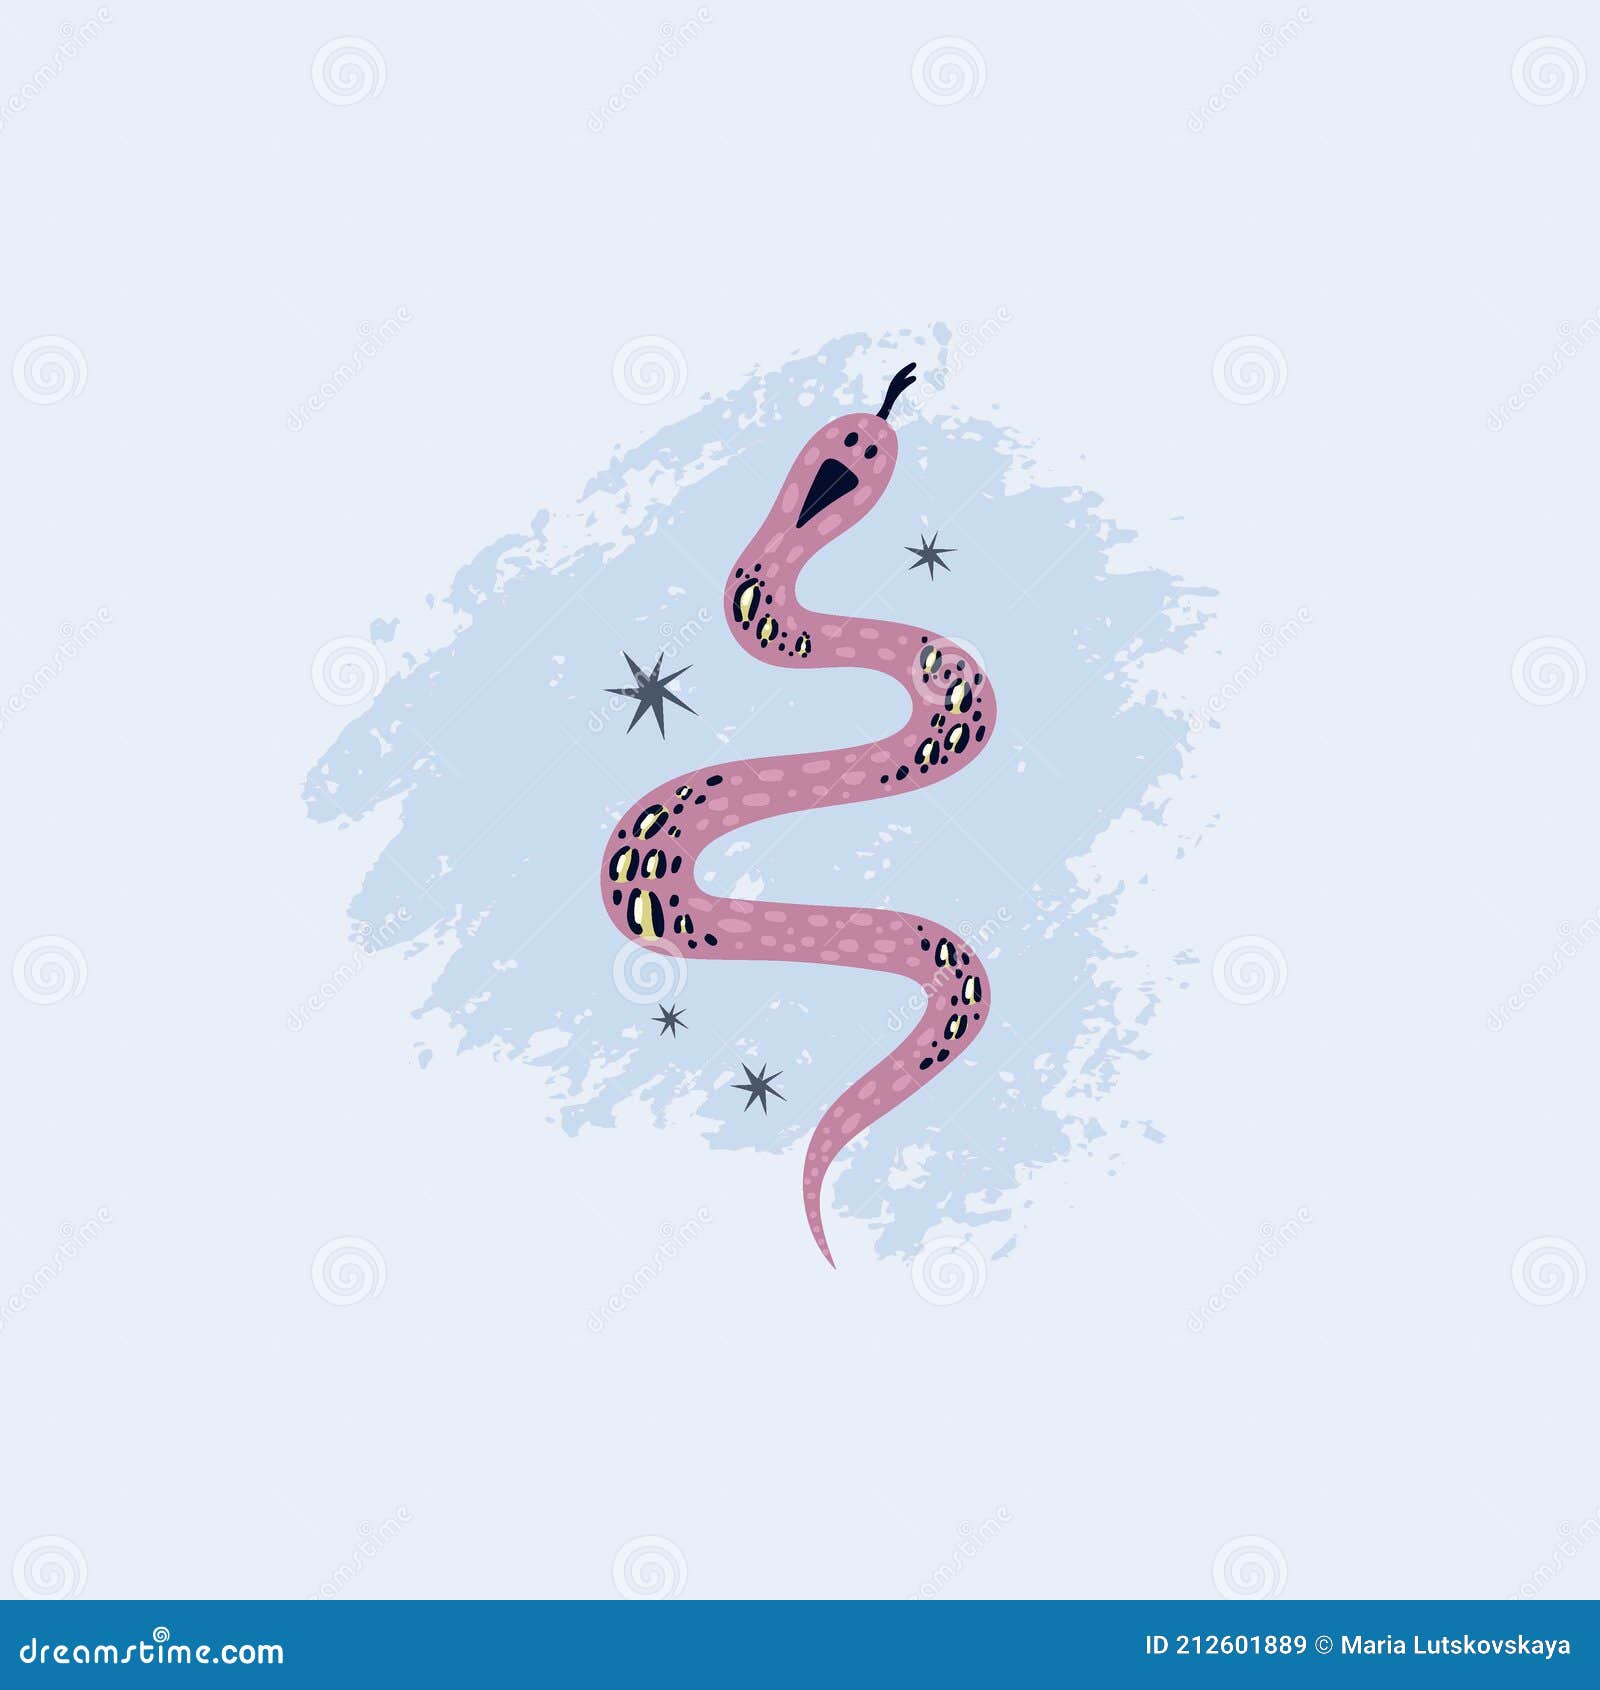 Pôster De Cobra. Cobras Cor-de-rosa E Azul Desenhadas à Mão Sobre